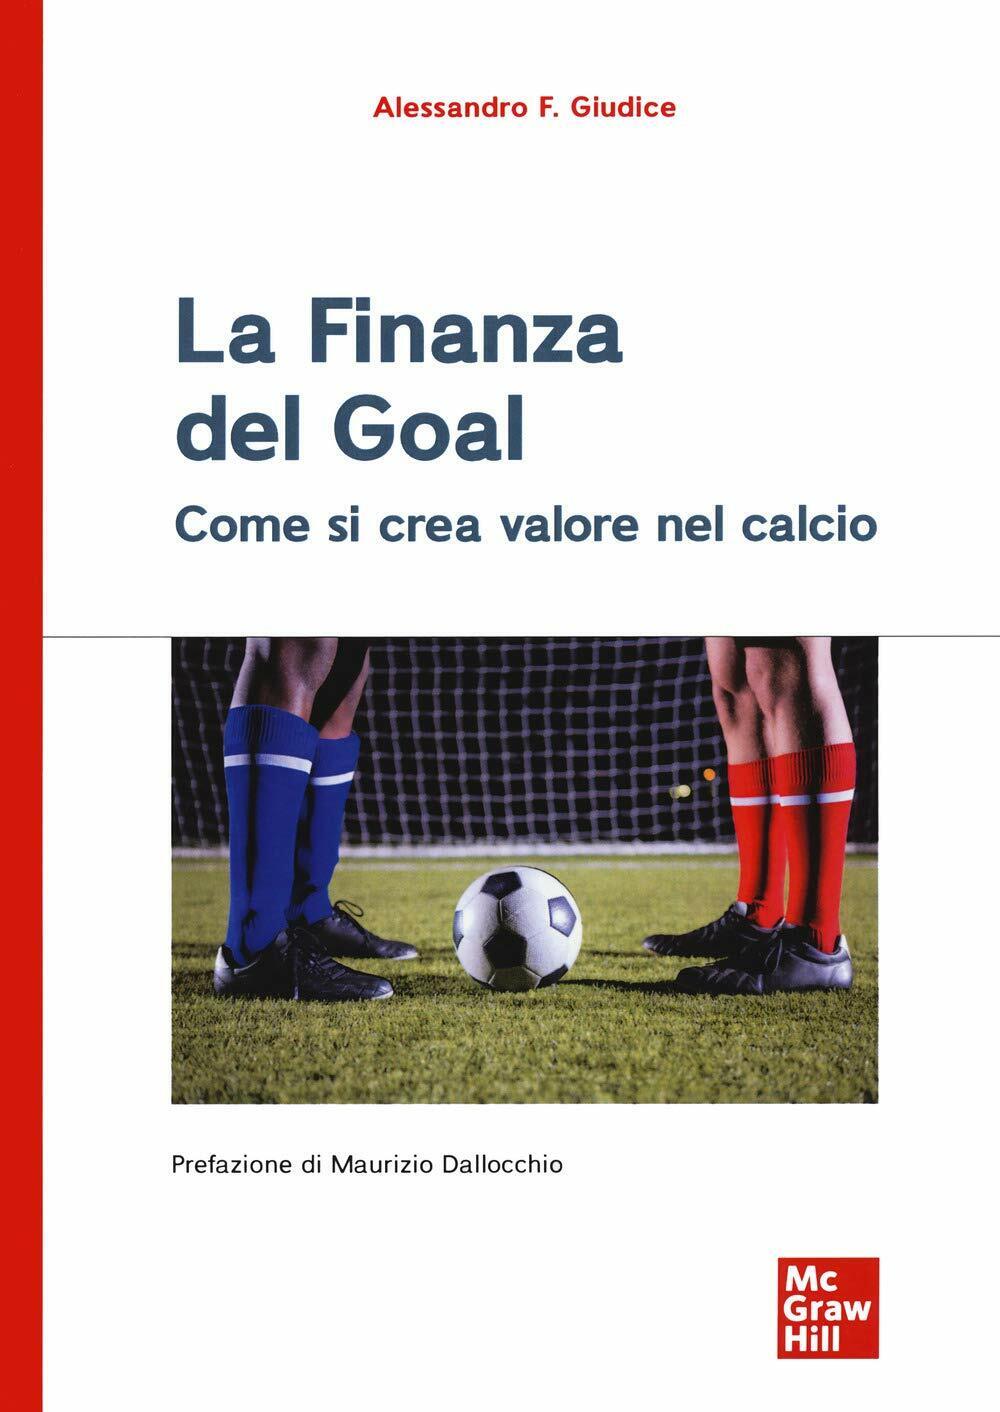 La finanza del goal - Alessandro F. Giudice - McGraw-Hill Education, 2020